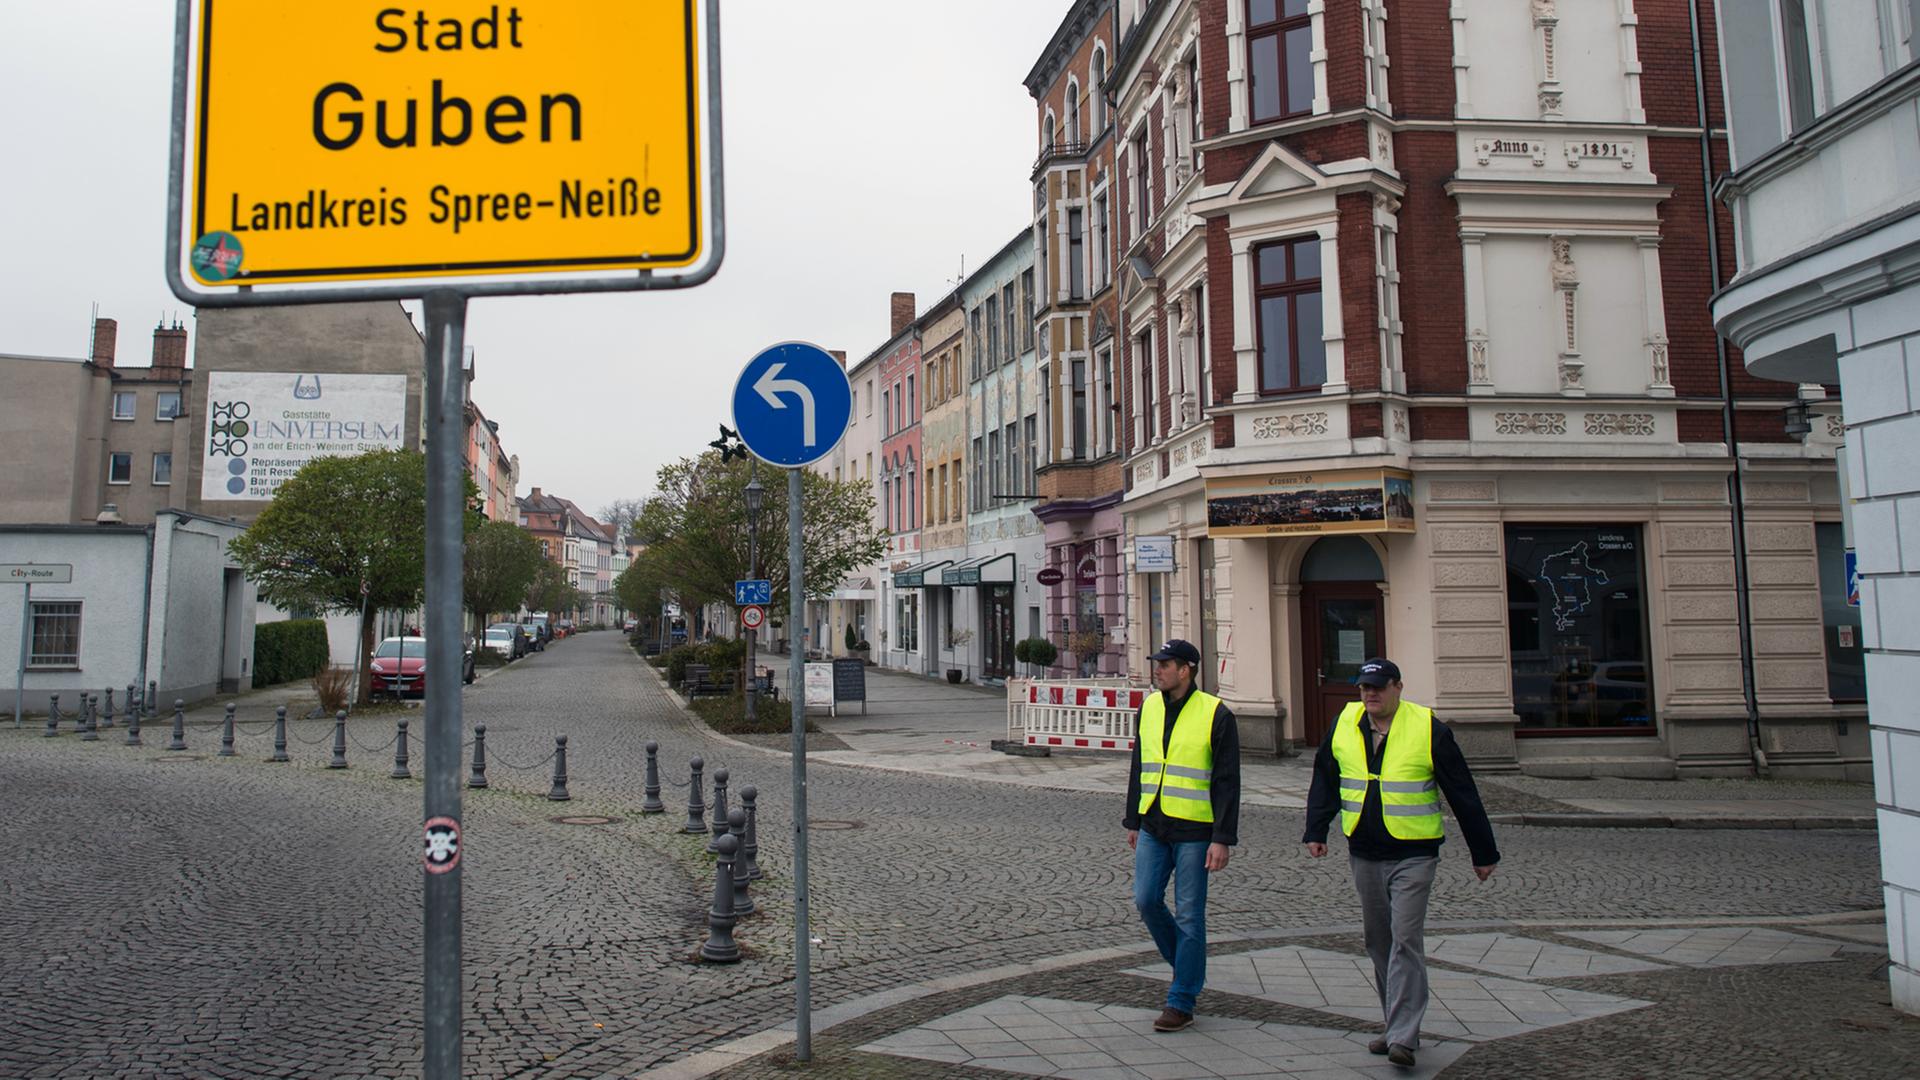 Mitarbeiter der Stadtverwaltung als "Stadtwache" auf Streife in der Grenzstadt Guben in Brandenburg.